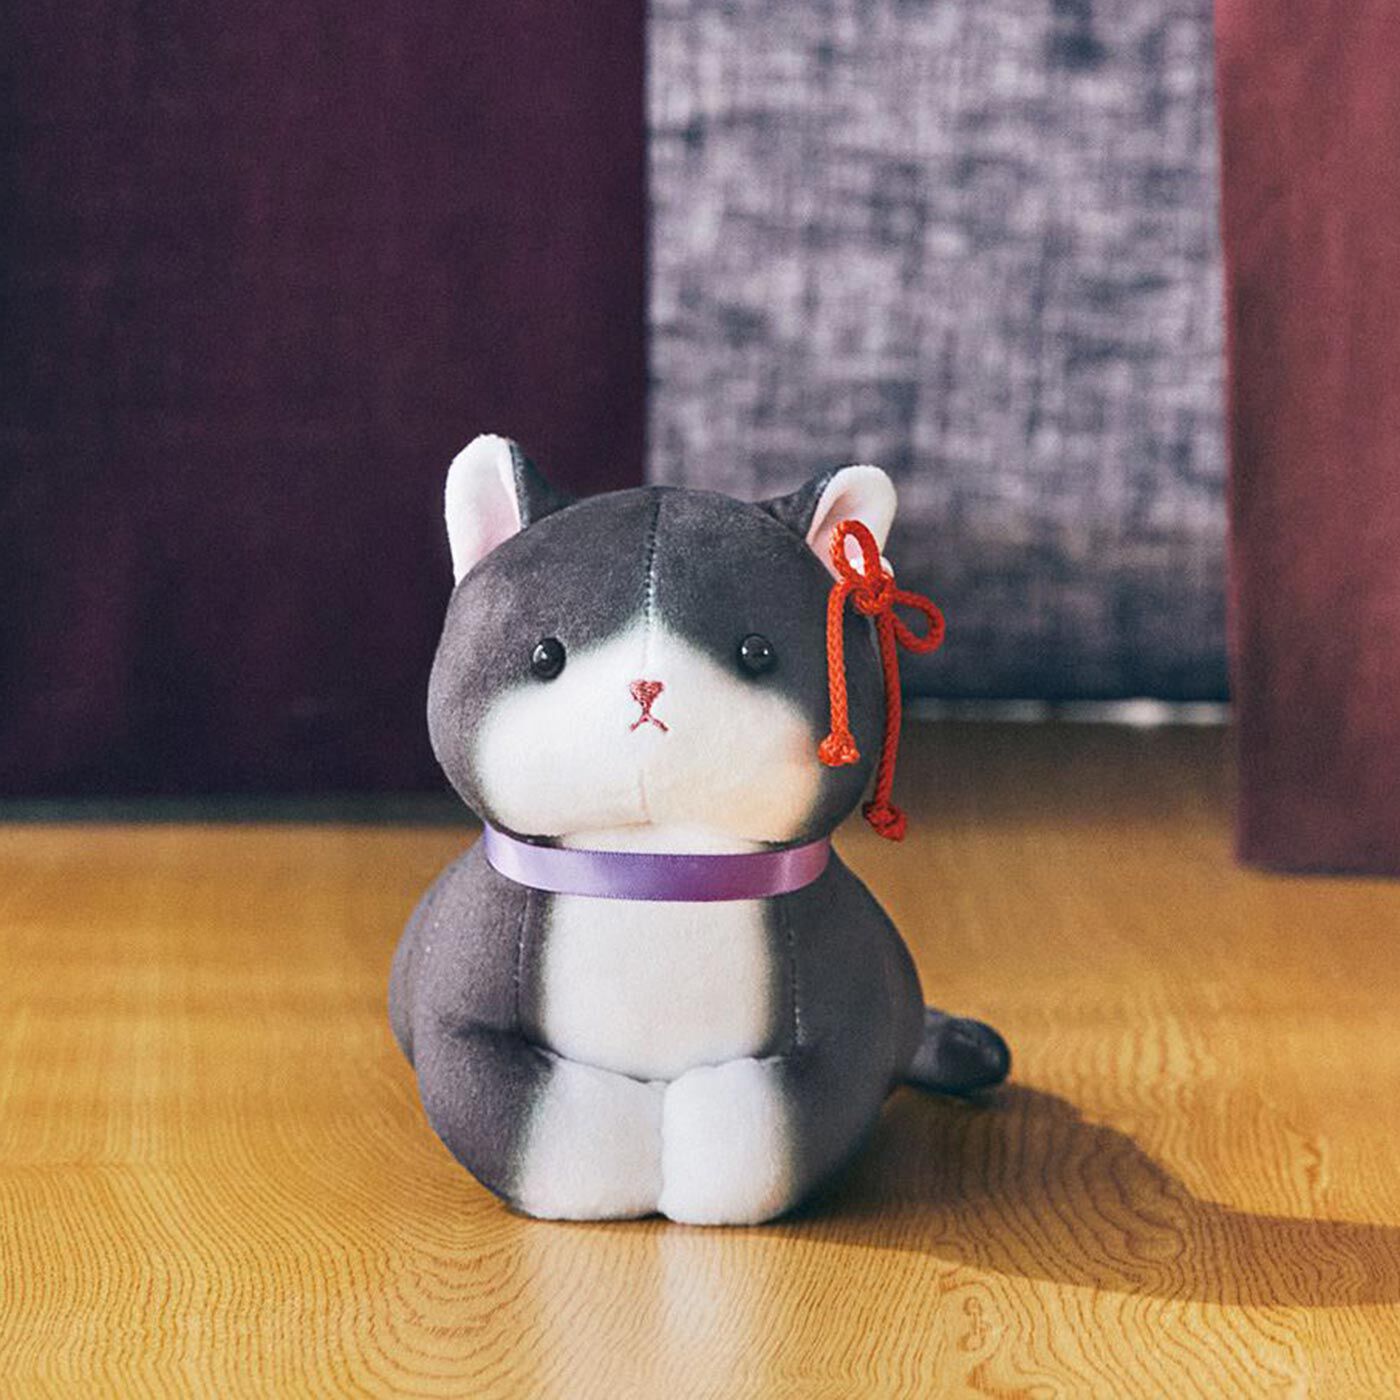 ミュージアム部|ミュージアム部　『枕草子・上にさぶらふ御猫は』より 命婦のおとどを愛でよう！ ぬいぐるみ|命婦のおとど：一条天皇がまさしく猫かわいがりしていた、清少納言が書いた『枕草子』に登場する猫。「なまえを付けられた猫」としては日本史上最古の記録に残る存在。